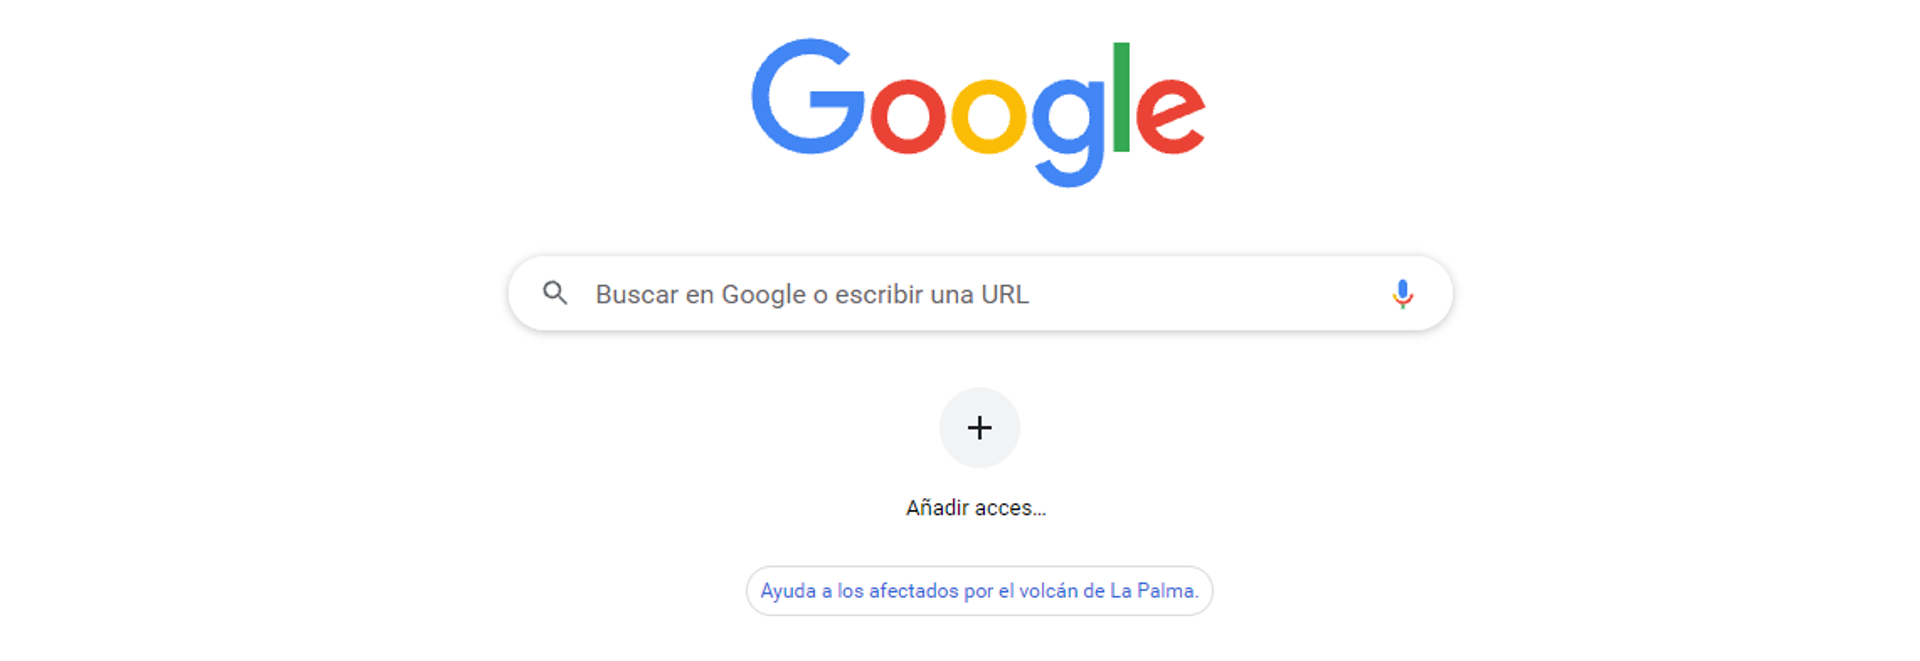 Enlace de ayuda de Google para los afectados de La Palma - Sputnik Mundo, 1920, 06.10.2021